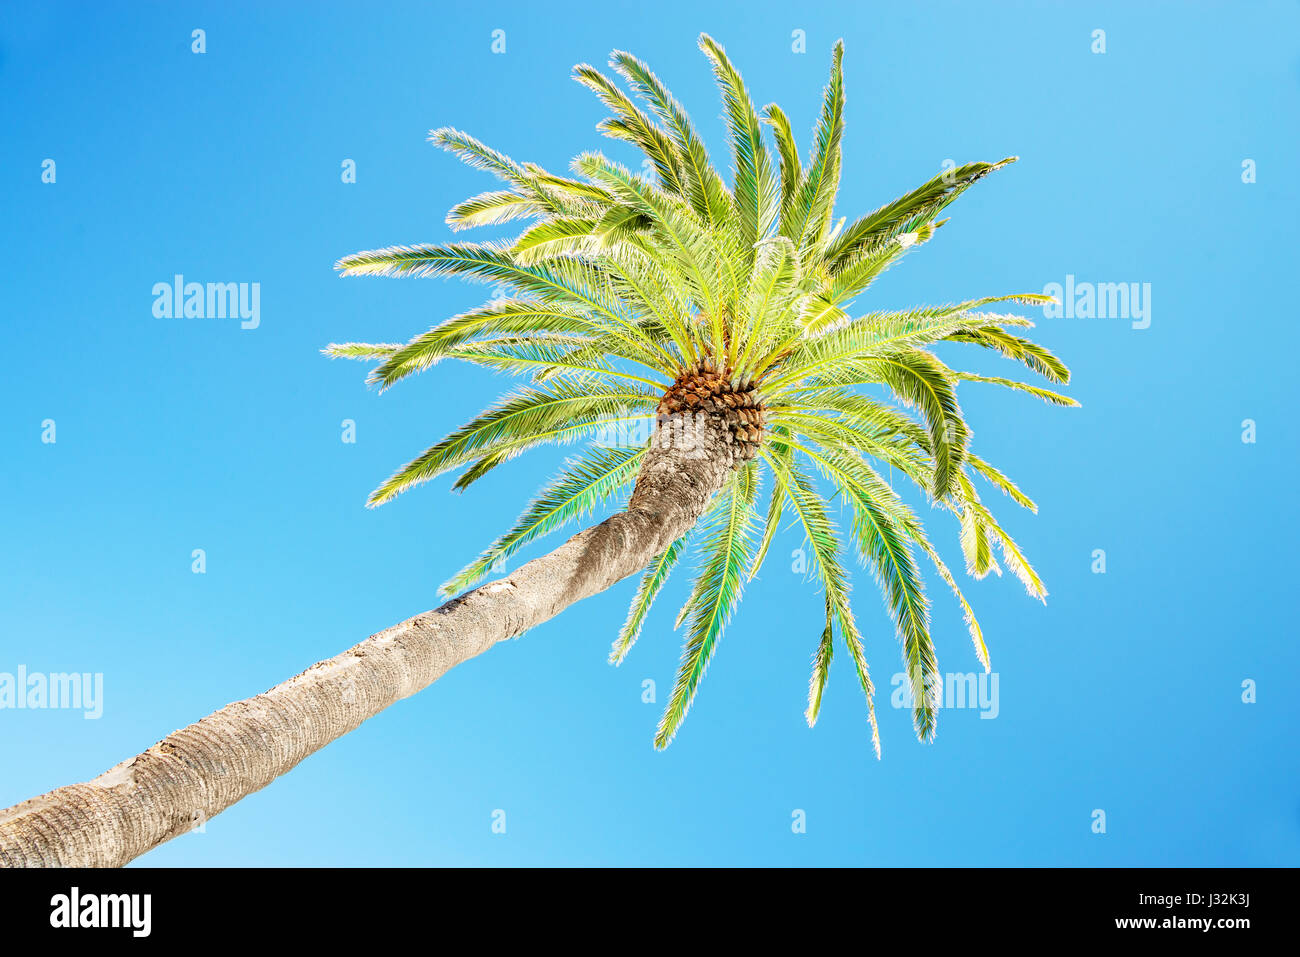 À la recherche jusqu'à leaning palm tree against blue sky, vue de dessous, tropical concept Voyages et tourisme Banque D'Images